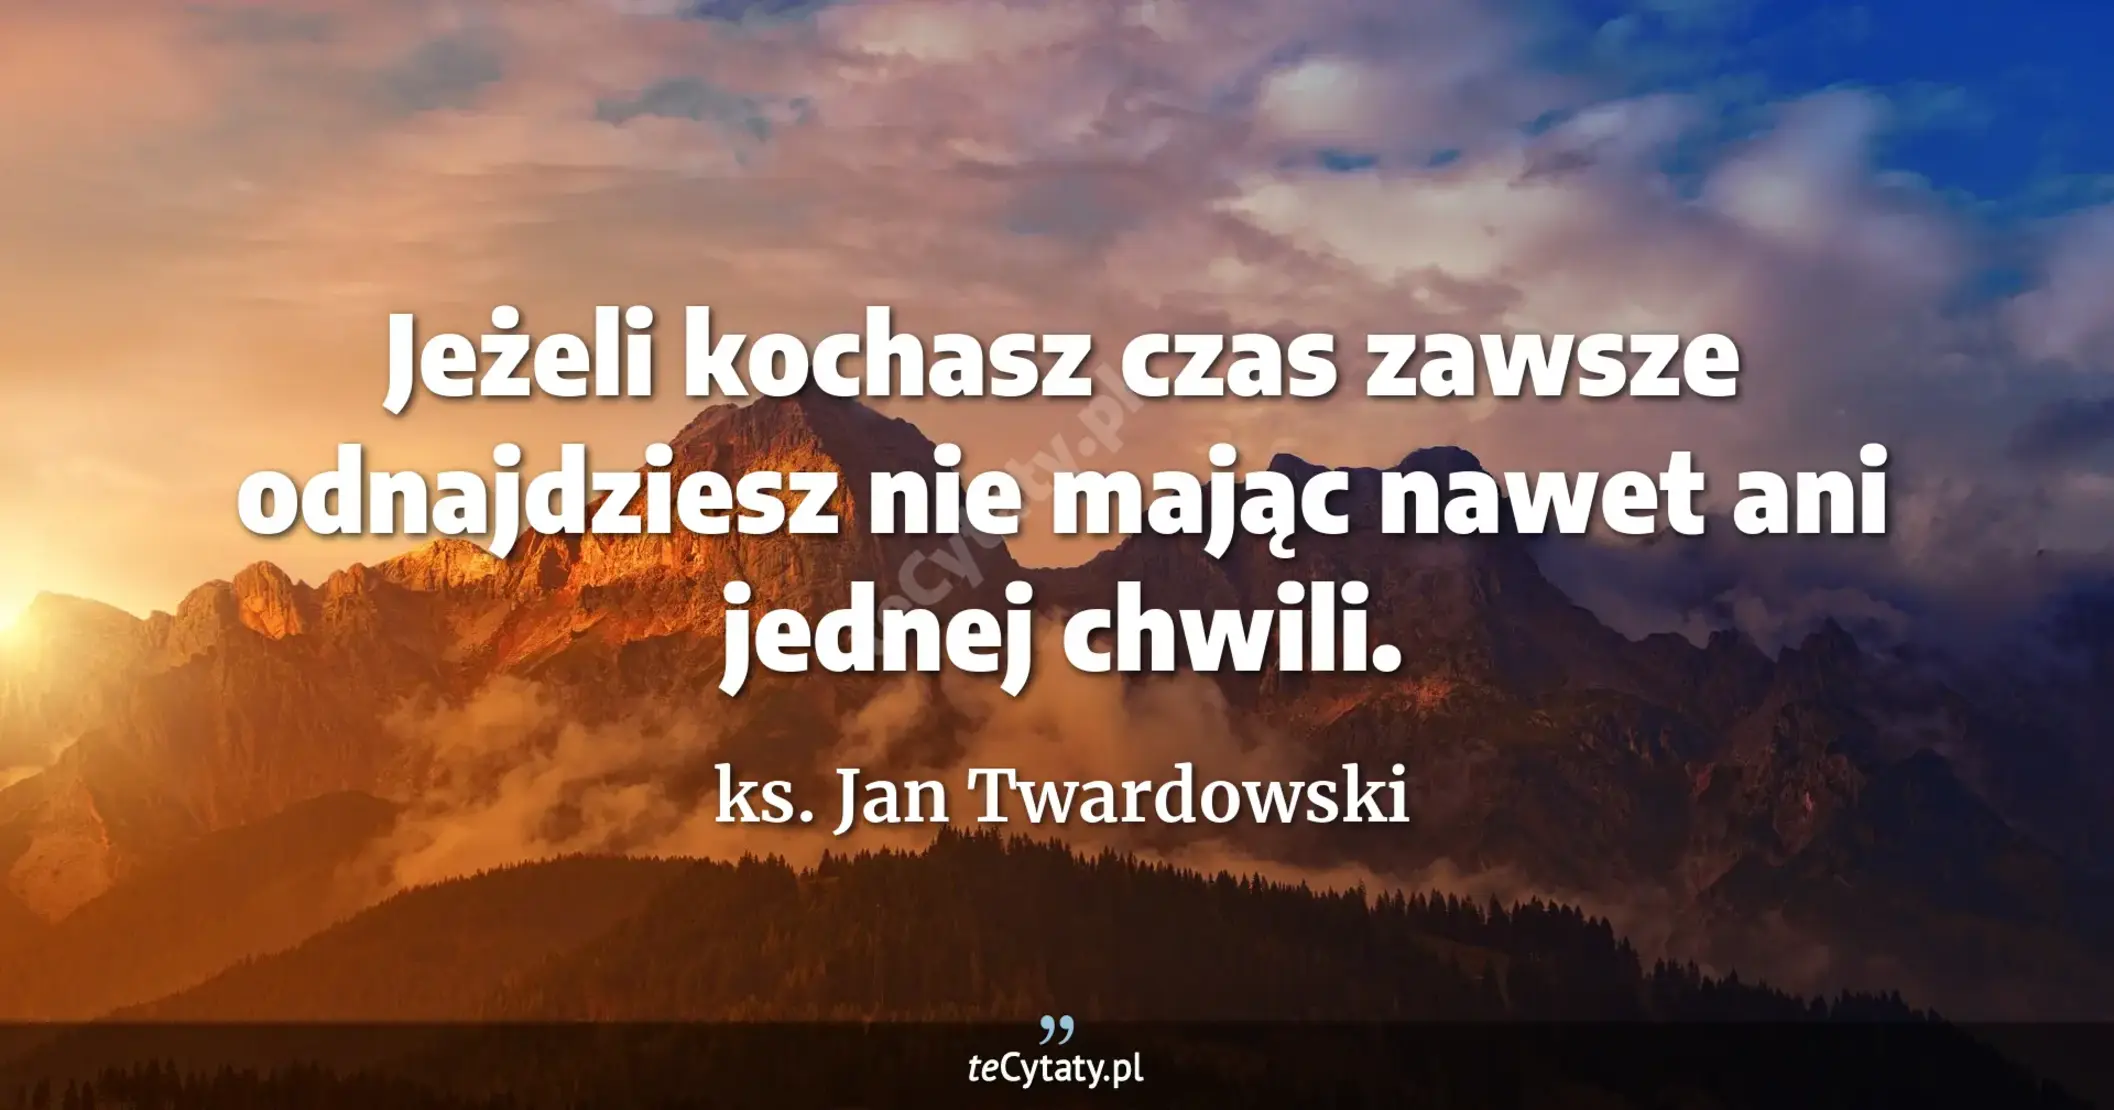 Jeżeli kochasz <br> czas zawsze odnajdziesz <br> nie mając nawet ani jednej chwili. - ks. Jan Twardowski